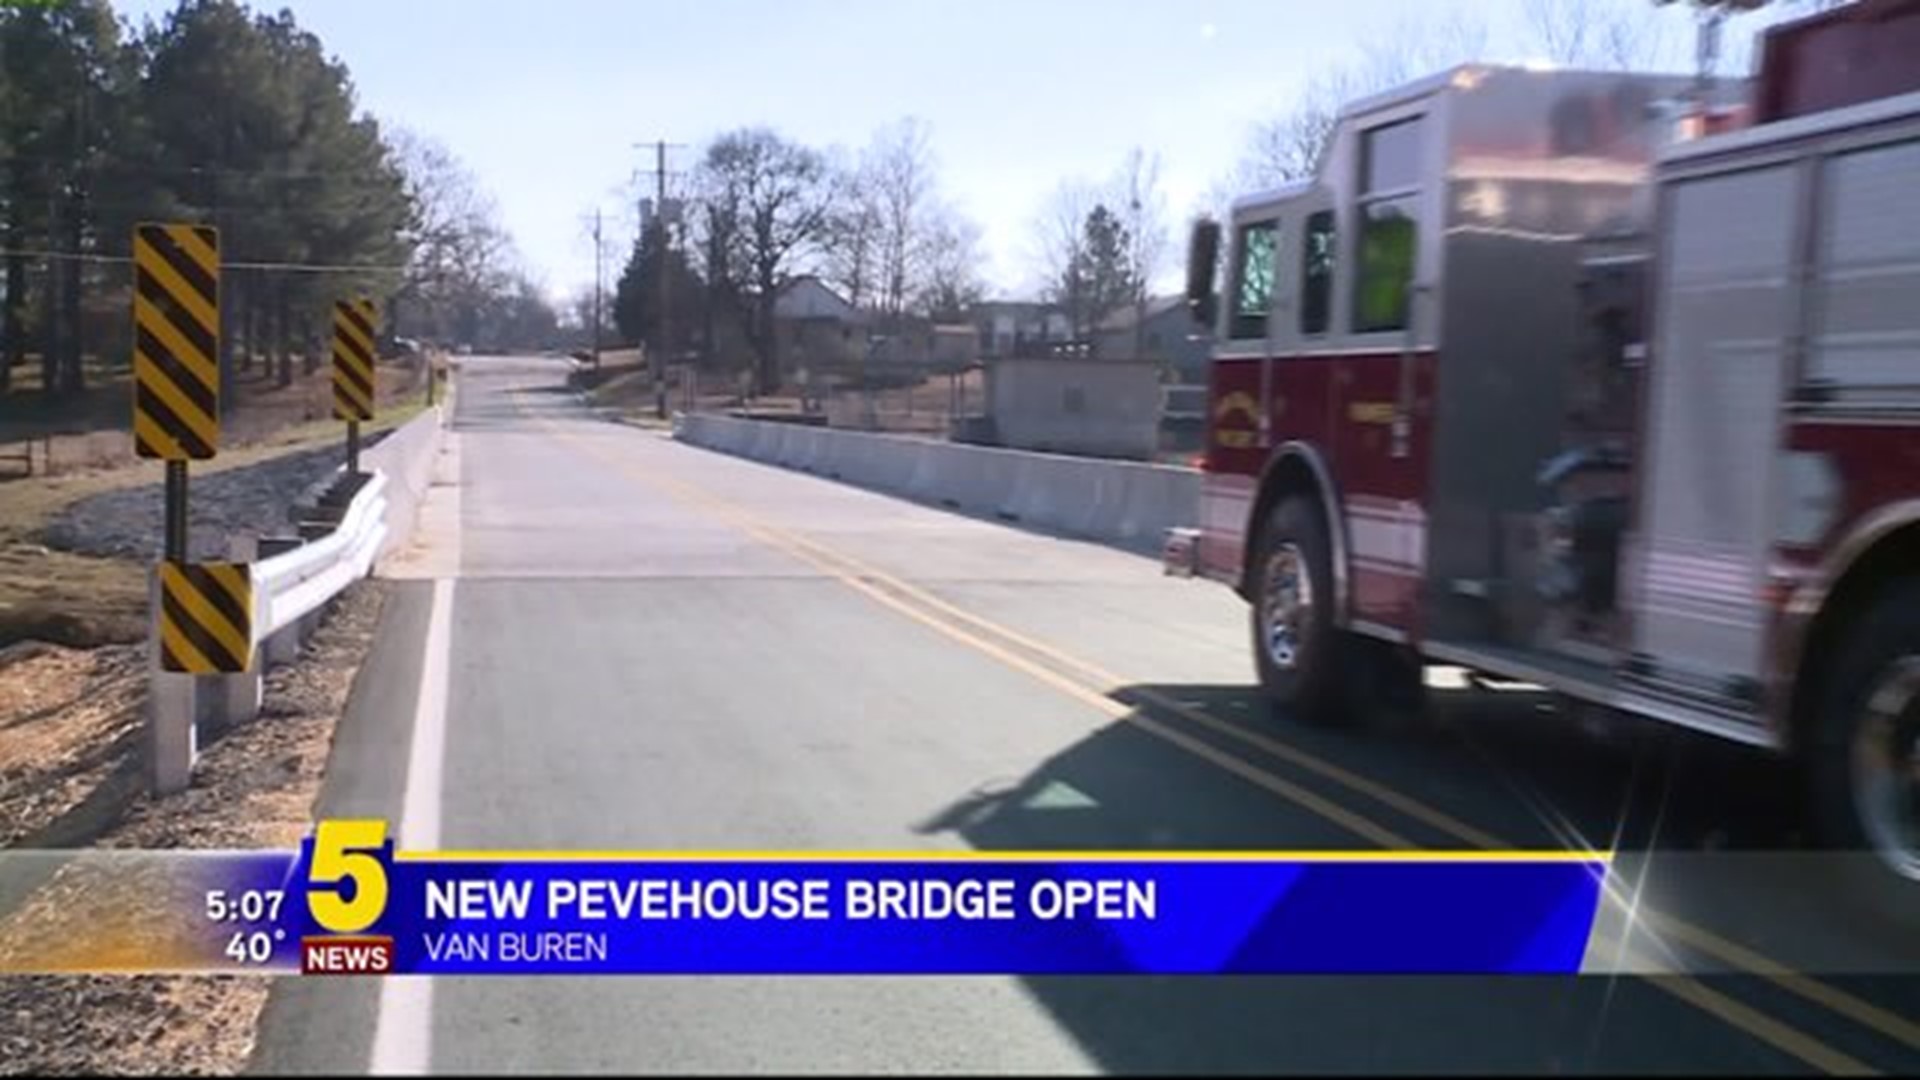 New Pevehouse Bridge Open